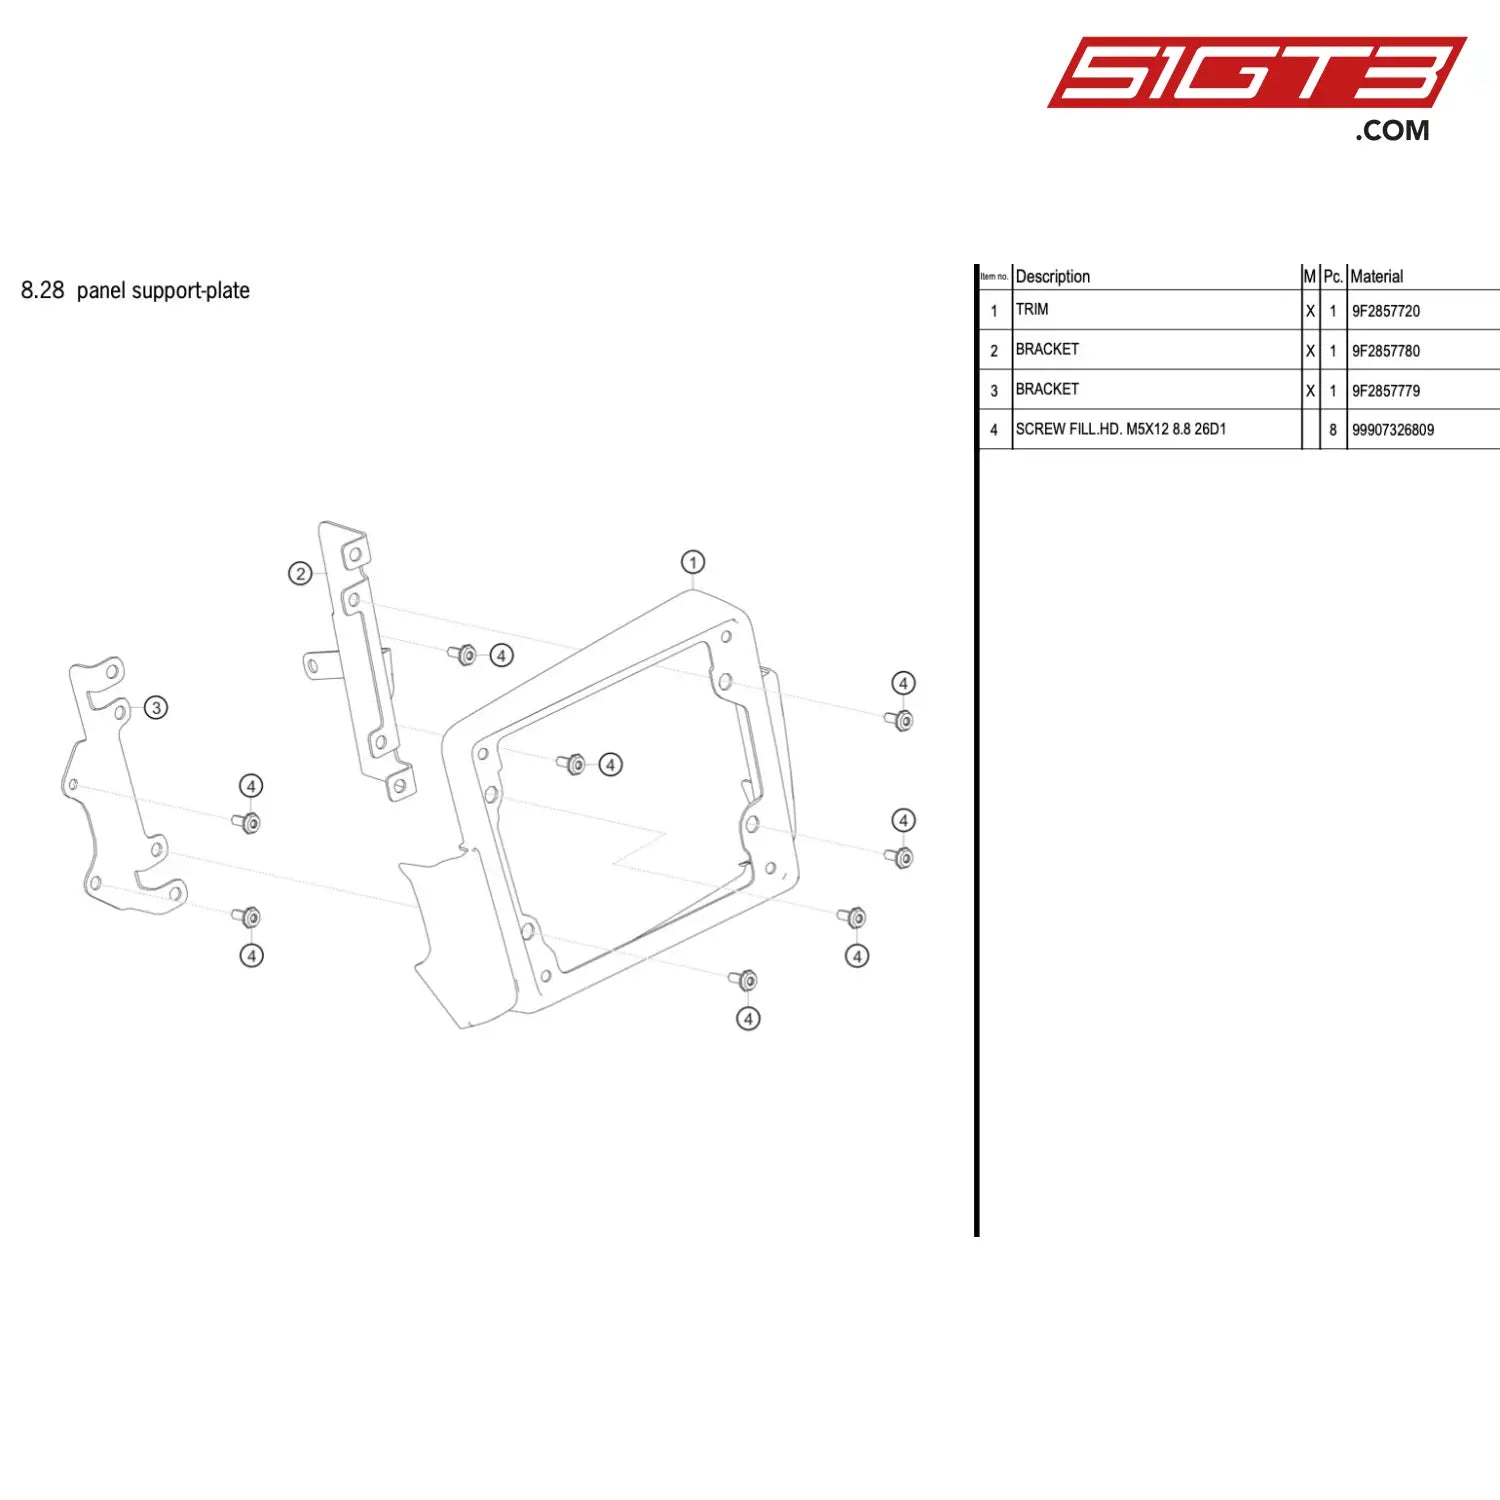 Bracket - 9F2857780 [Porsche 718 Cayman Gt4 Rs Clubsport] Panel Support-Plate